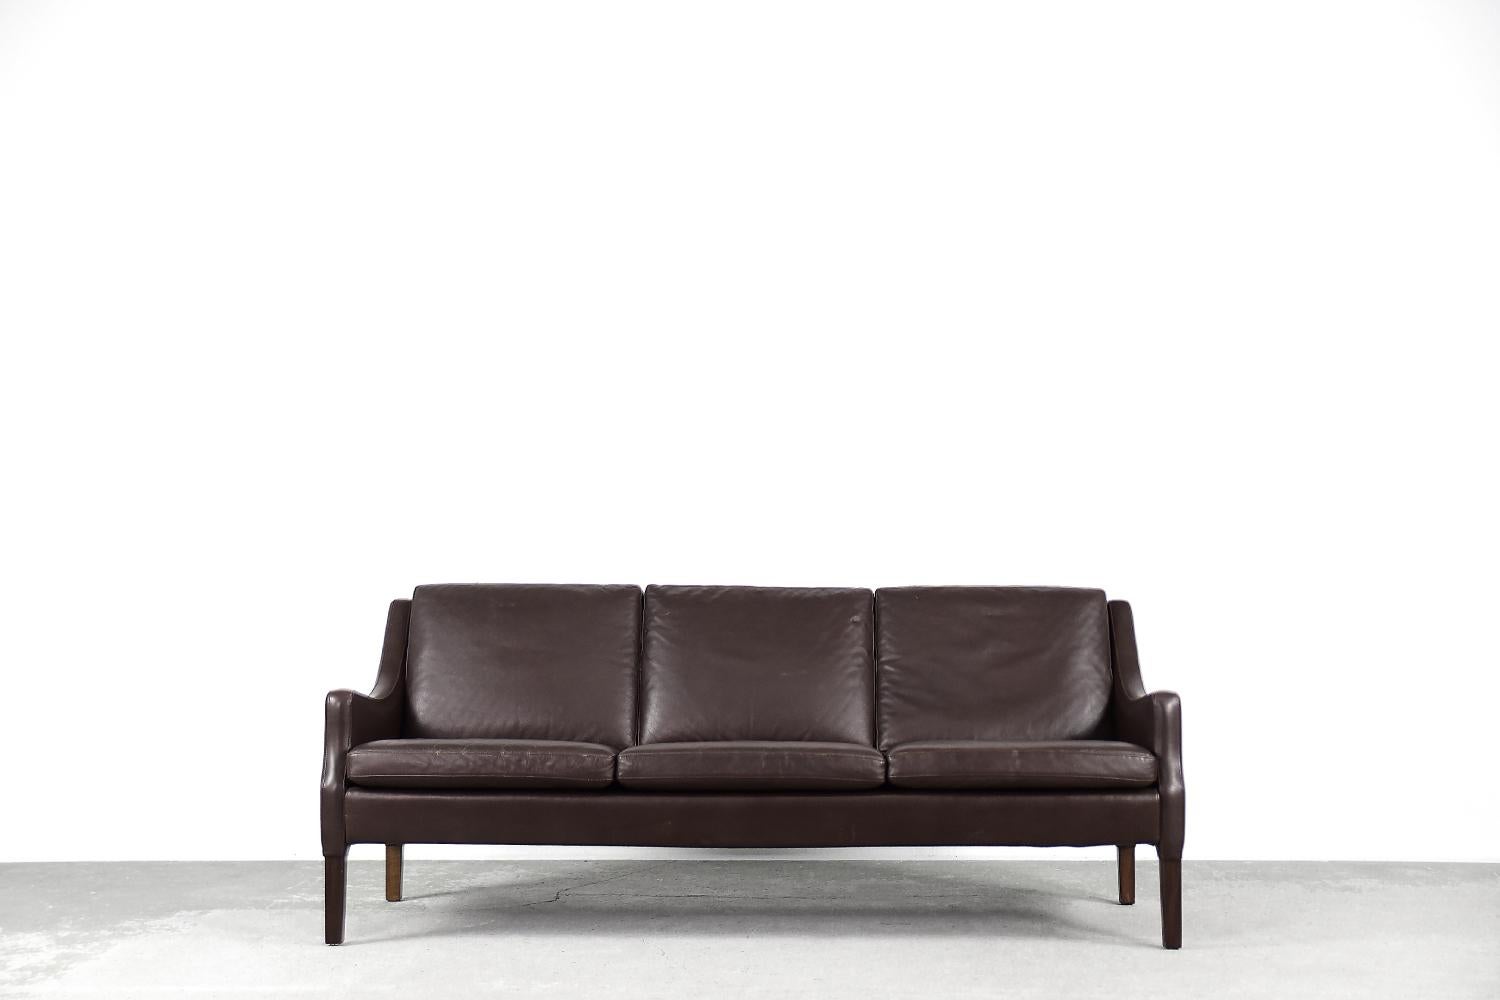 Dieses Dreisitzer-Sofa wurde in den 1960er Jahren in Dänemark hergestellt. Das Sofa ist vollständig mit natürlichem Leder in einer tiefen, dunklen Schokoladenfarbe gepolstert. Die bequemen, lose aufgesetzten Kissen sorgen für Komfort und Komfort